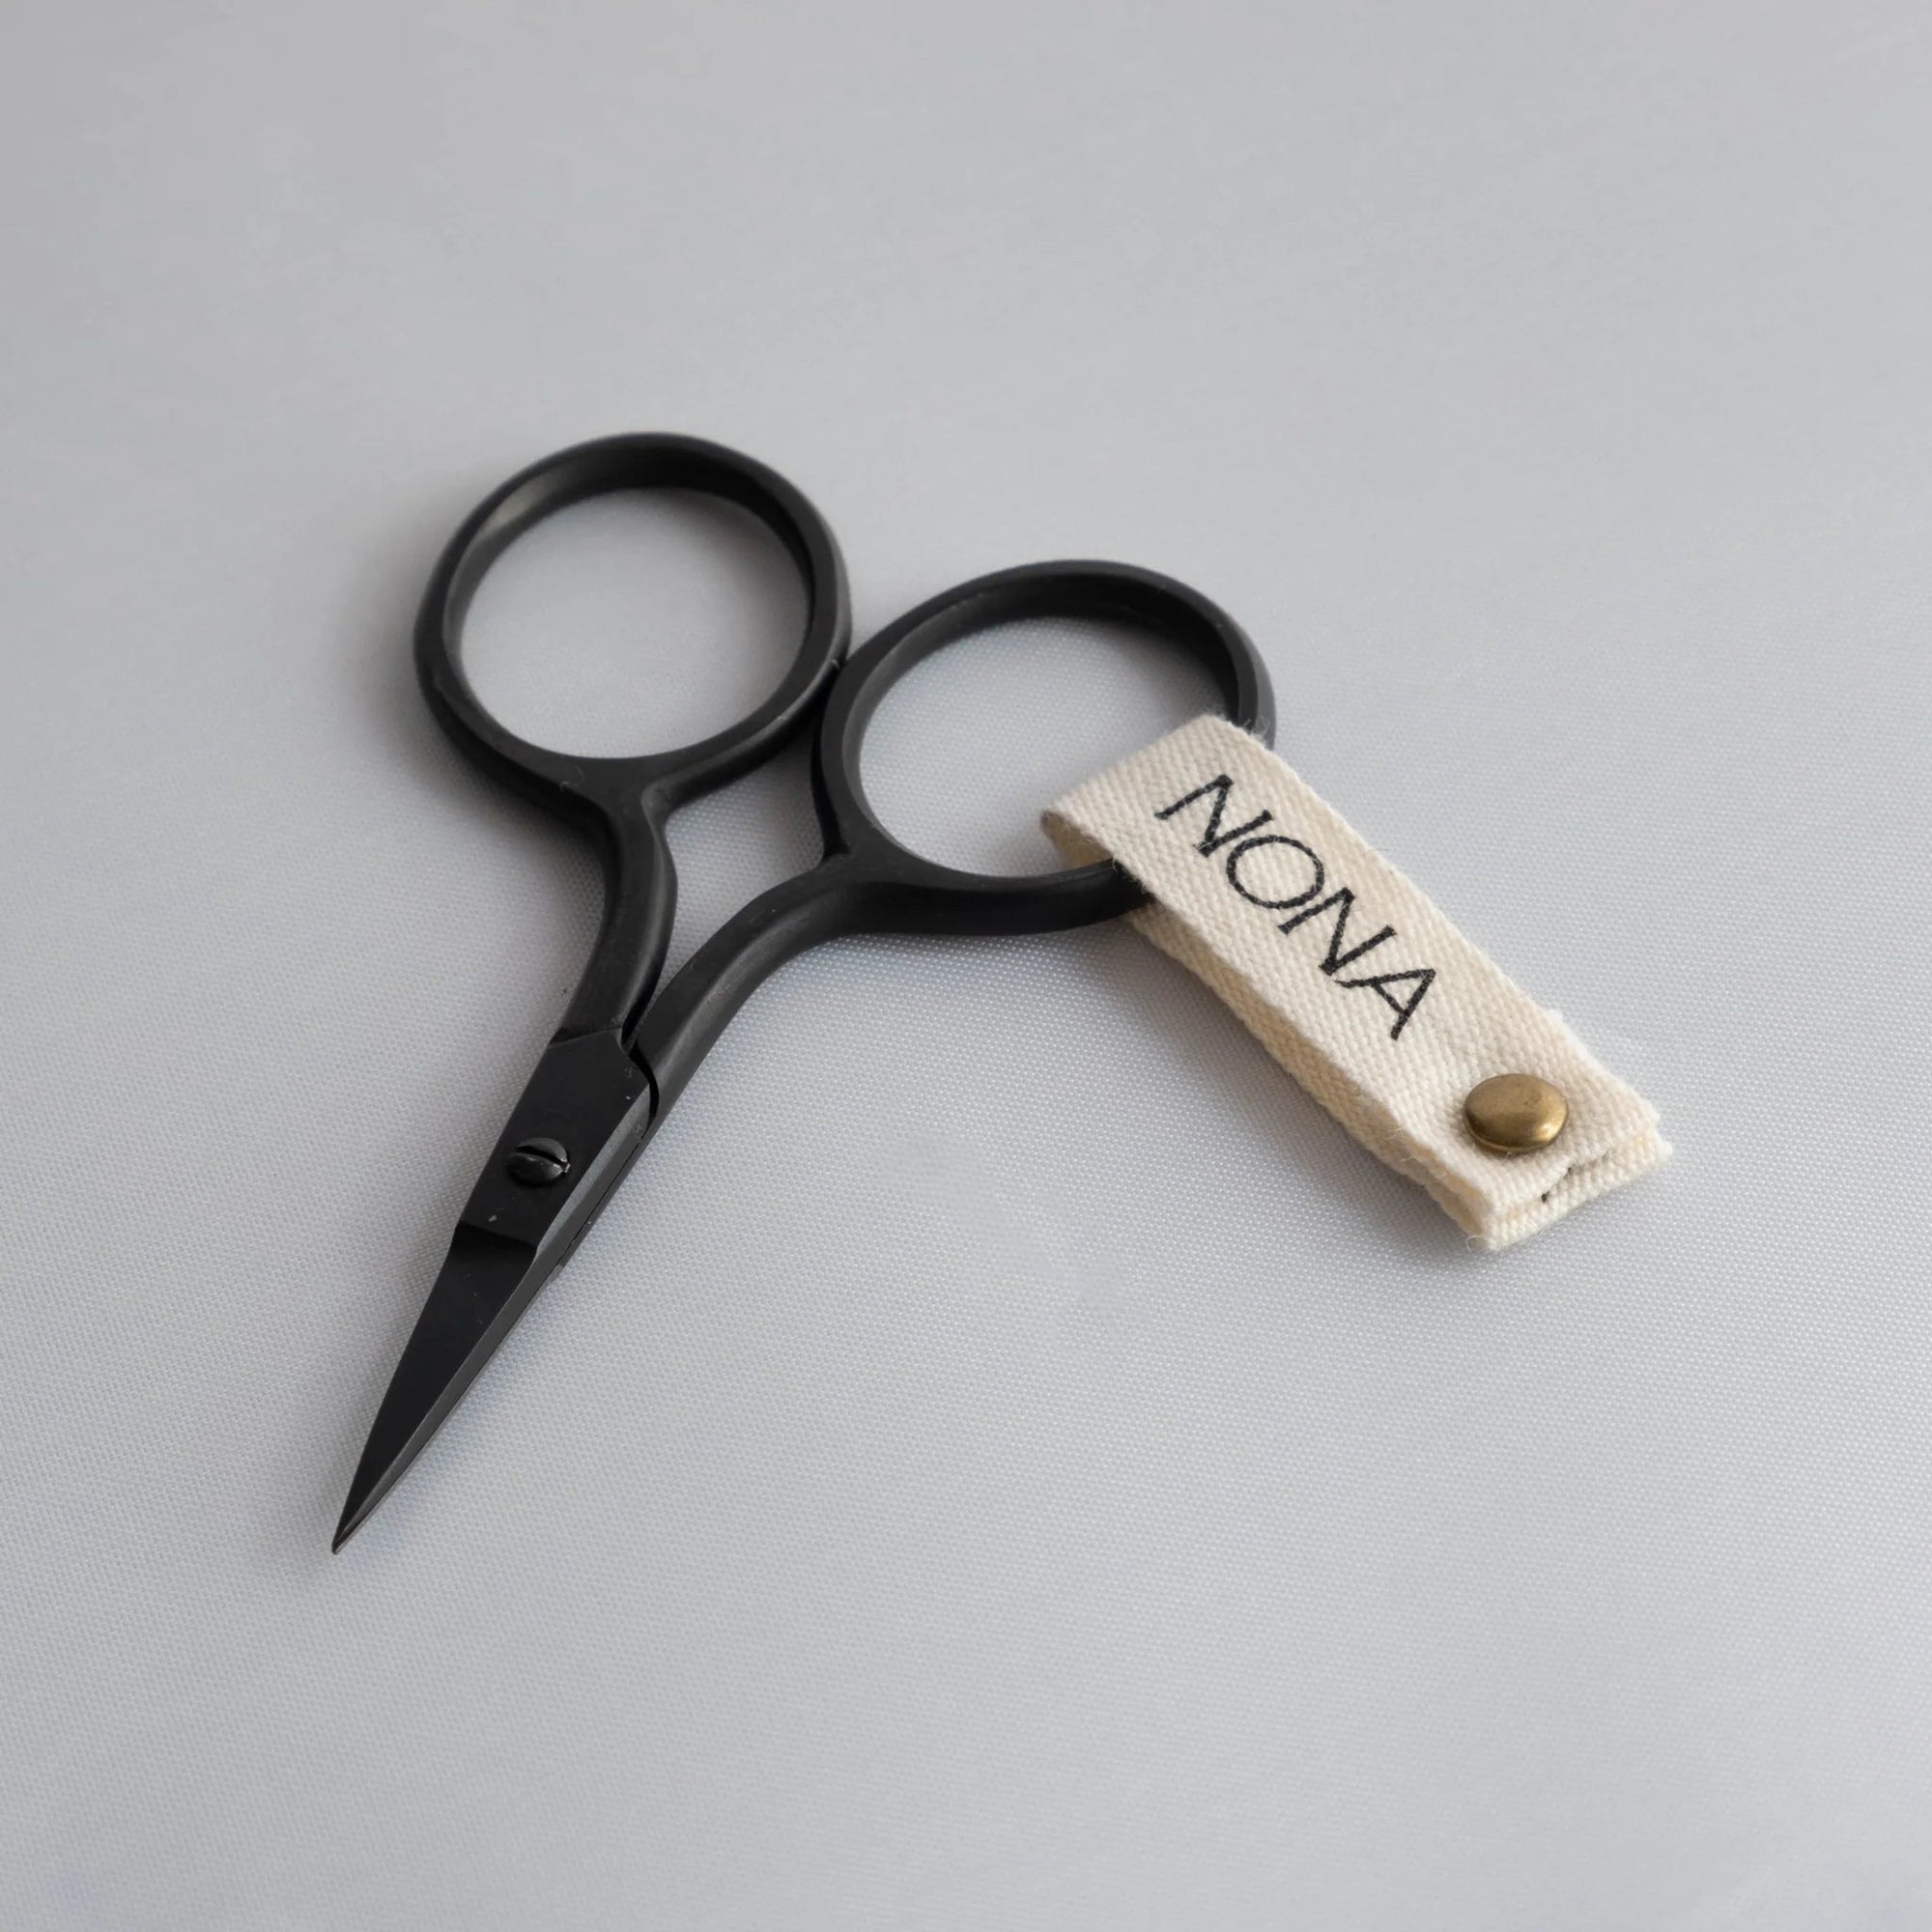 NONA Black Embroidery Mini Scissors - NONA - The Little Yarn Store